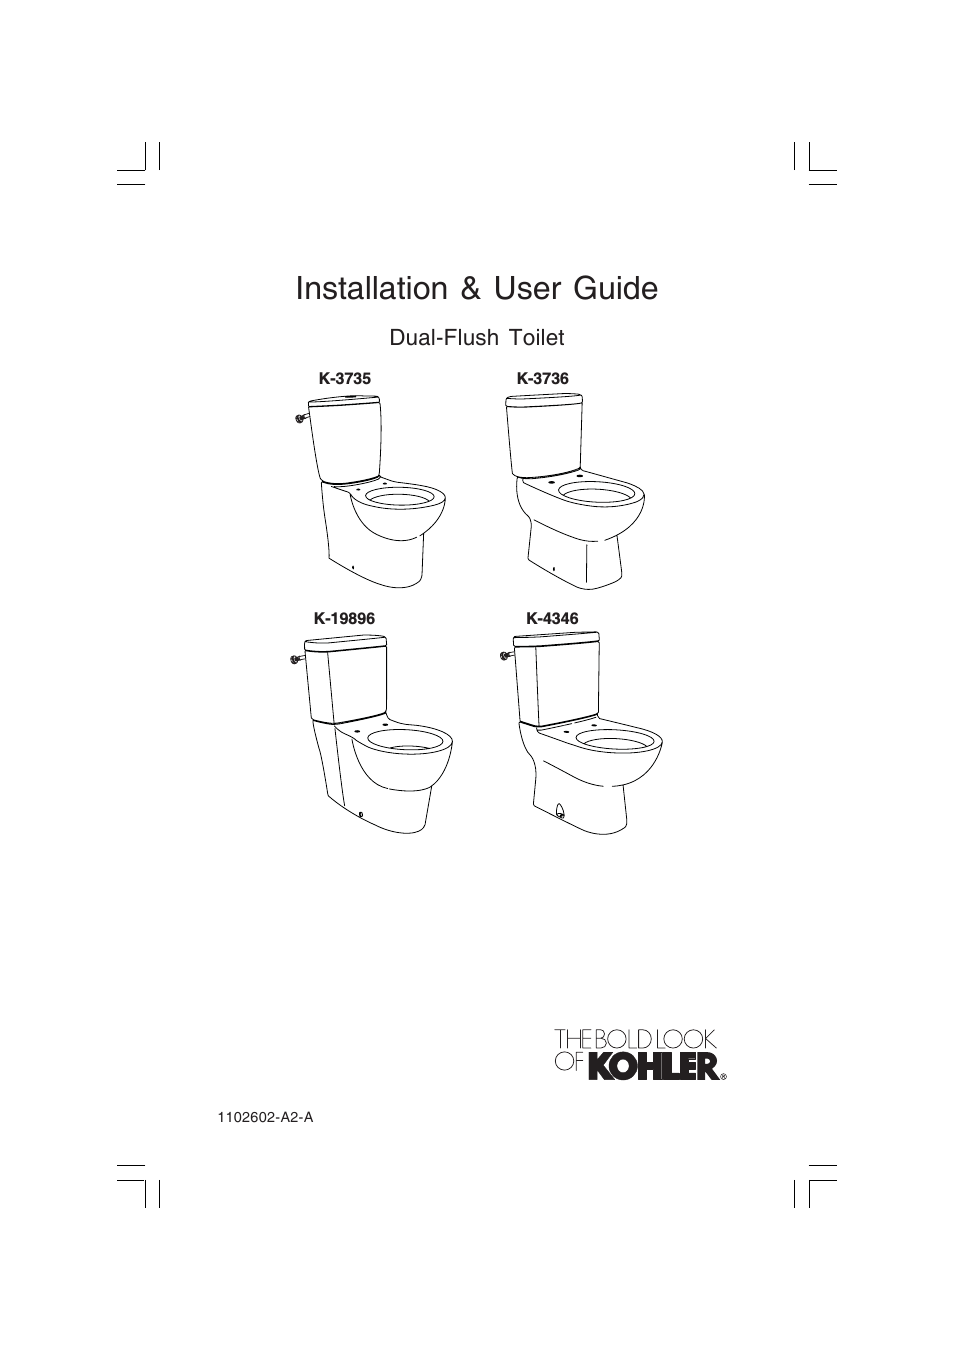 Dual-Flush Toilet K-3736